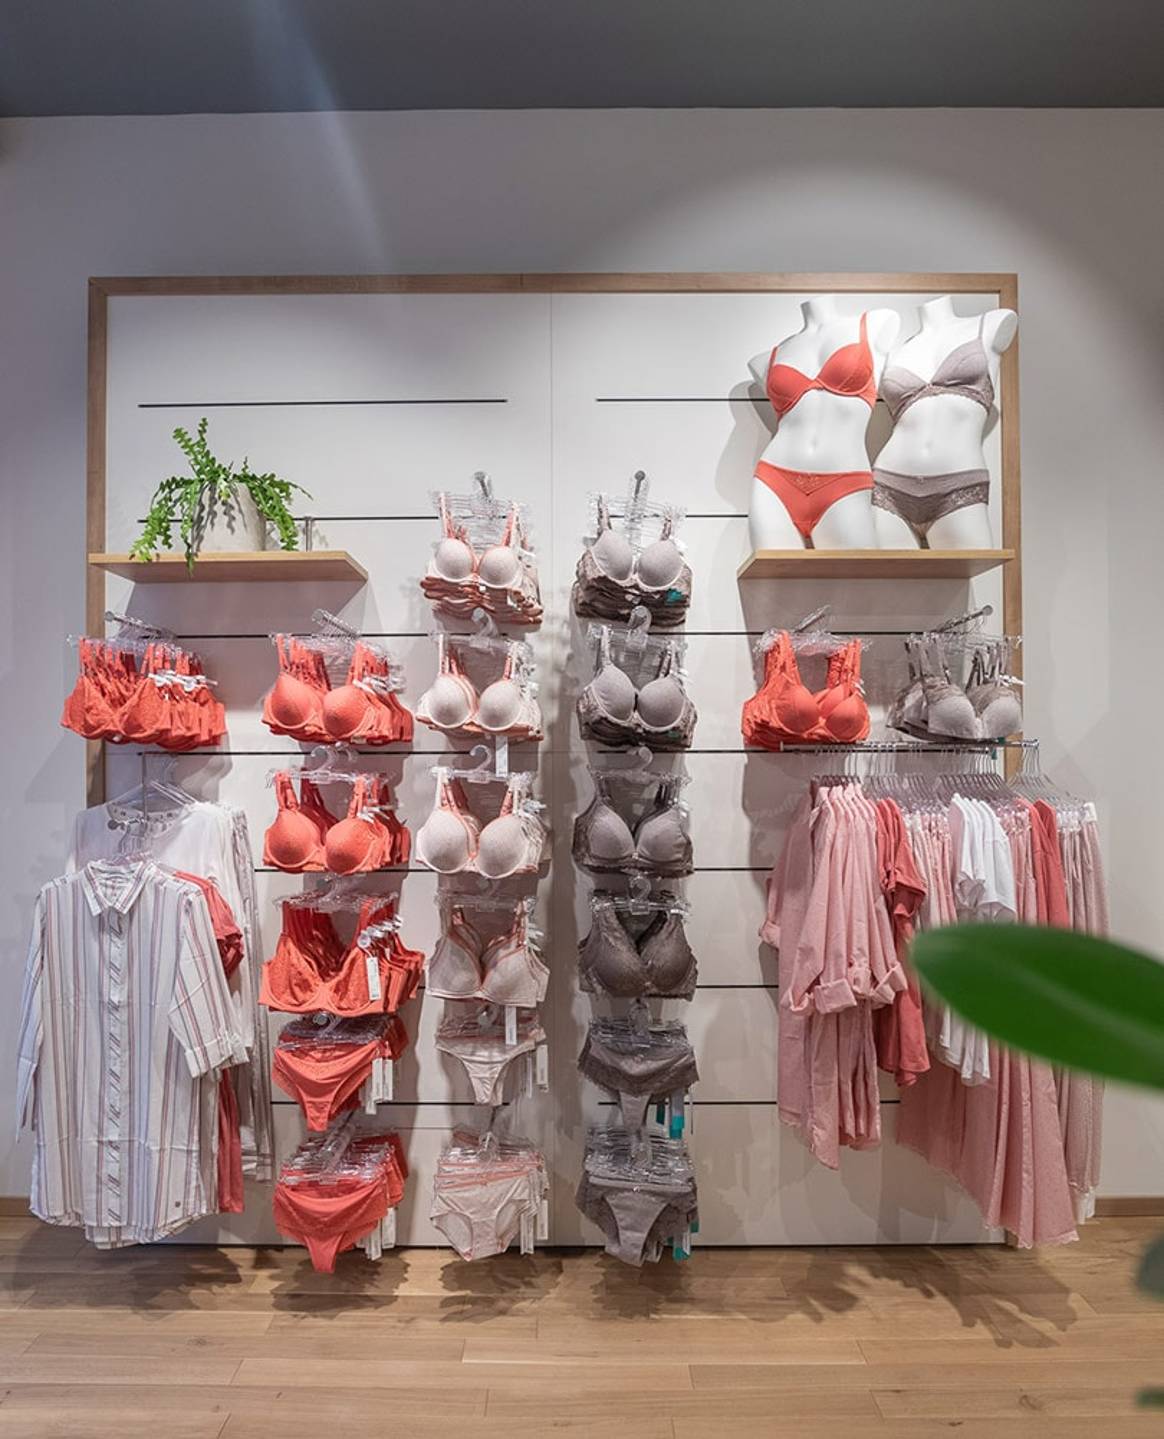 Binnenkijken bij de eerste Esprit bodywear winkel in Nederland